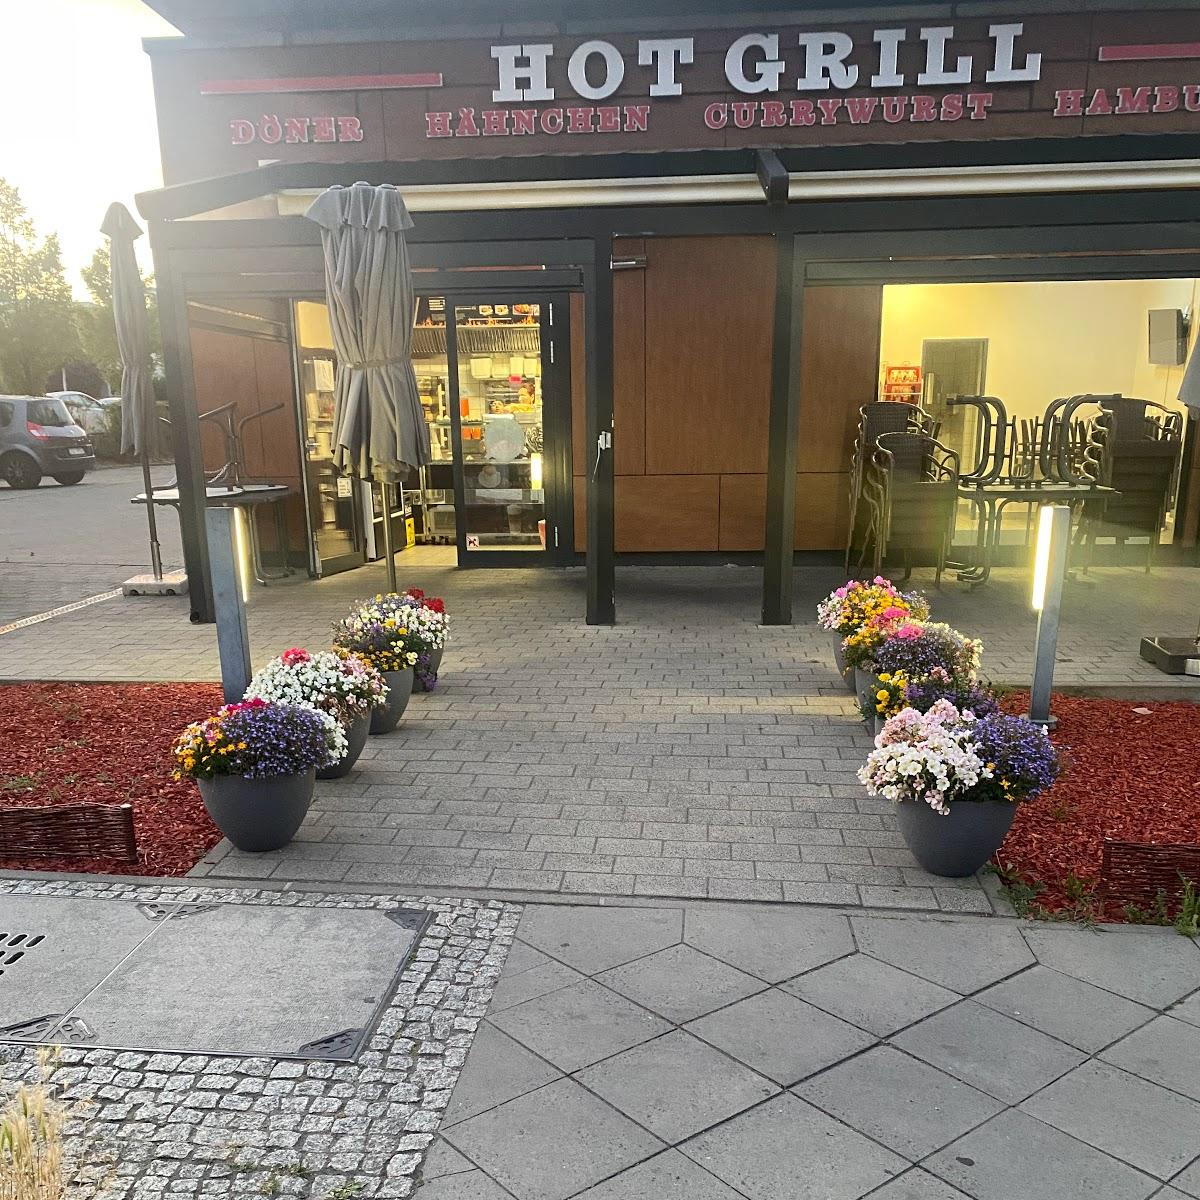 Restaurant "Hot Grill" in Berlin